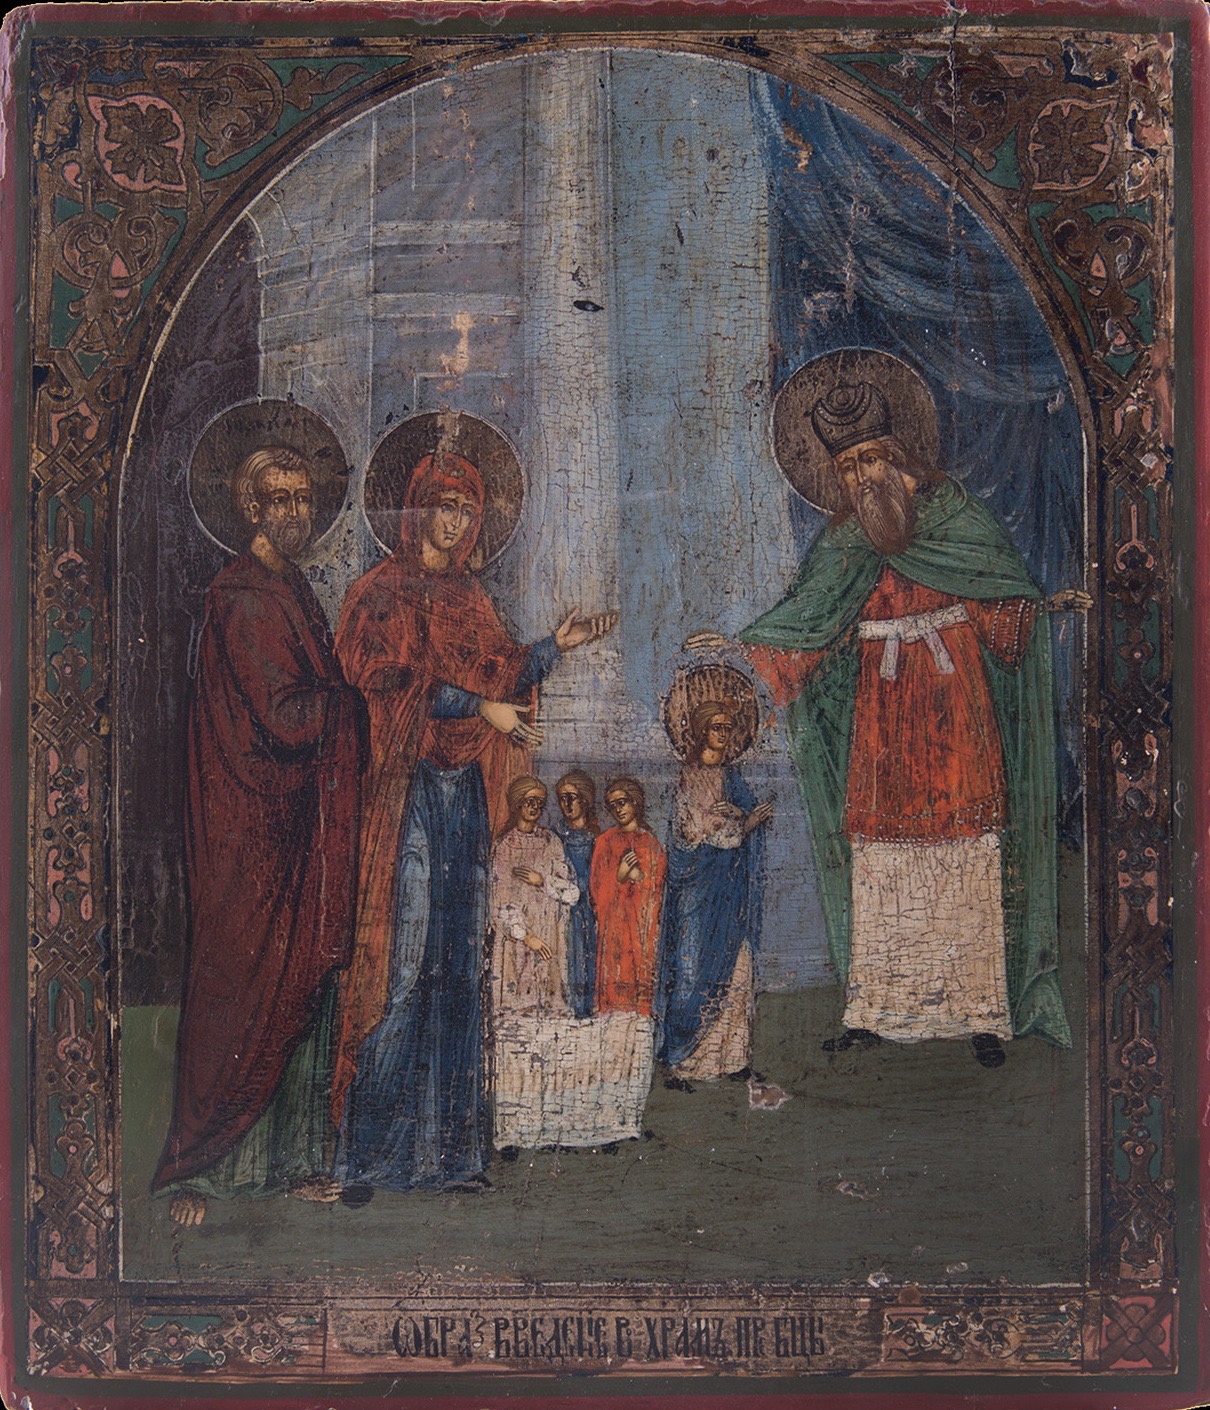 Ιερά Αγρυπνία στον Ι. Ν. Αγ. Παρασκευής με την ευκαιρία της εορτής των Εισοδίων της Θεοτόκου